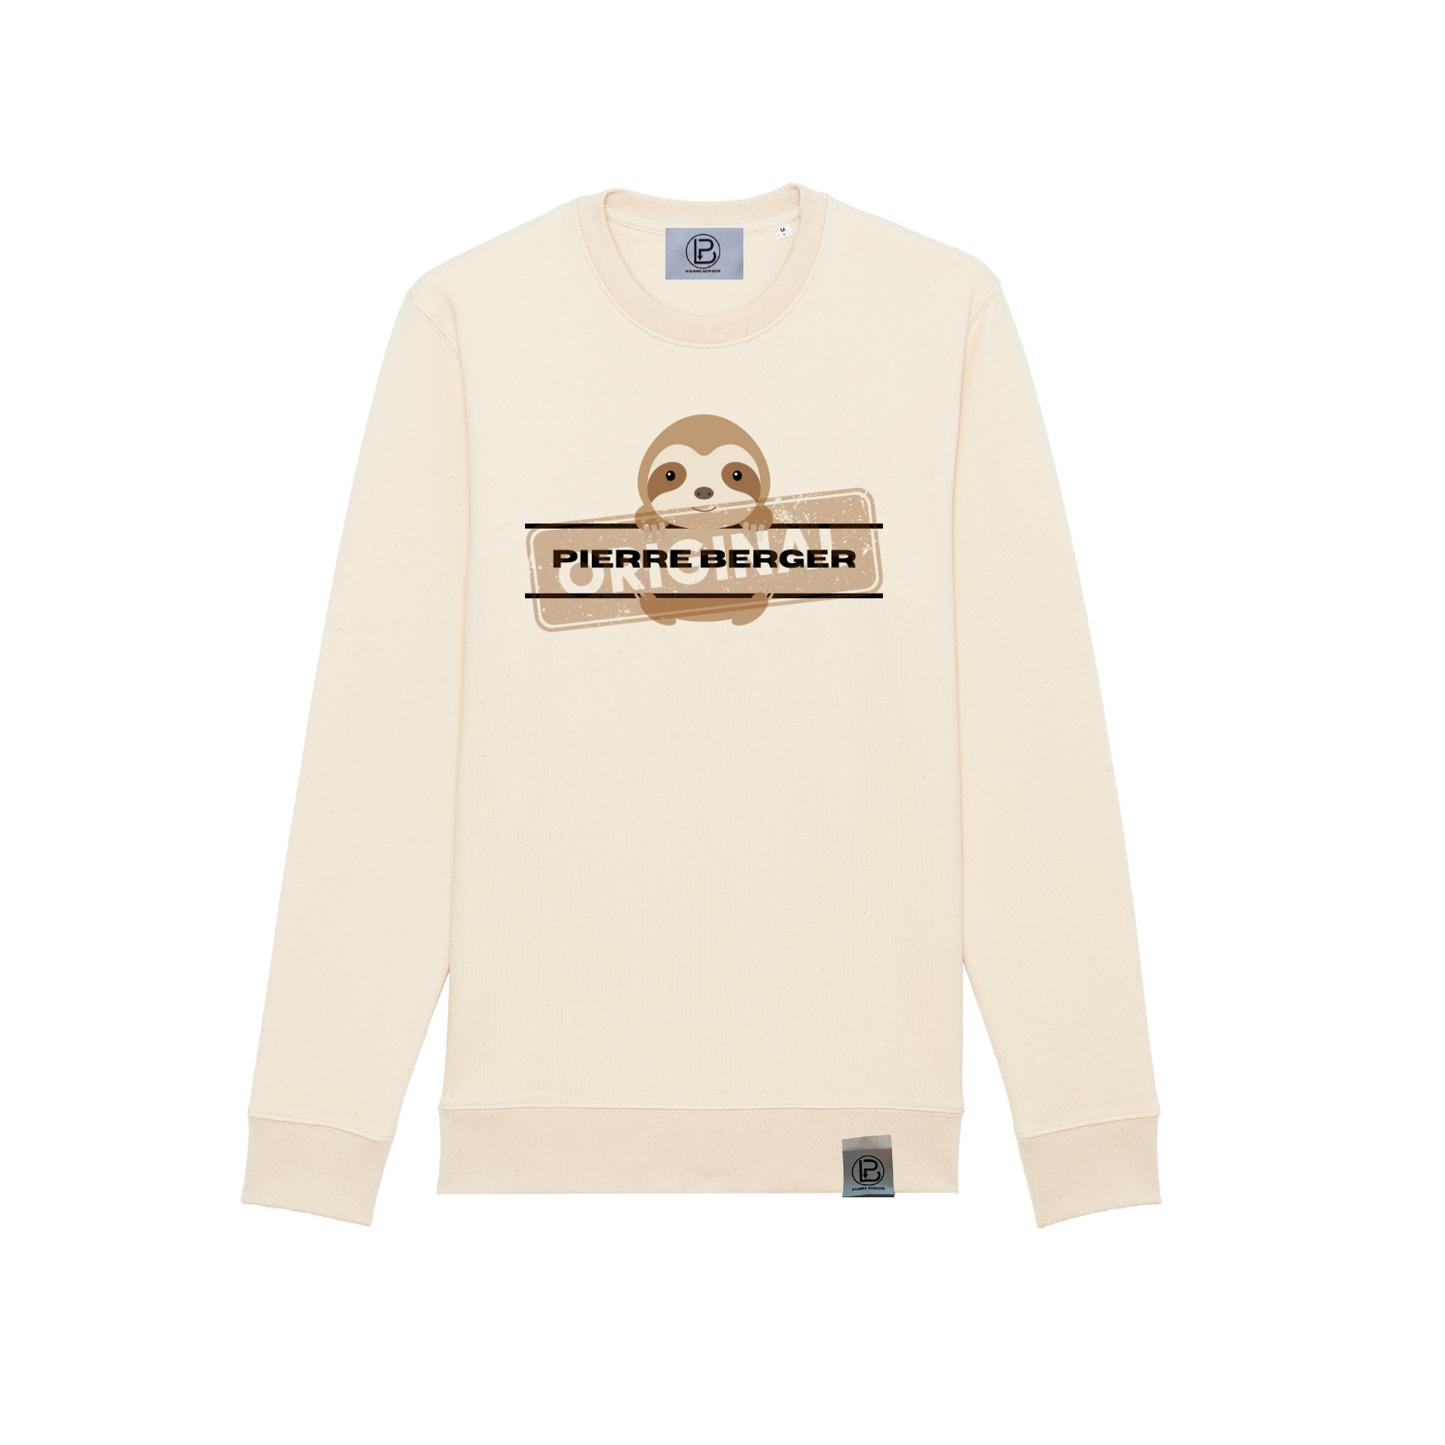 PIERRE BERGER - Unisex Rundhals Sweatshirt Sloth Original 100% recycelt